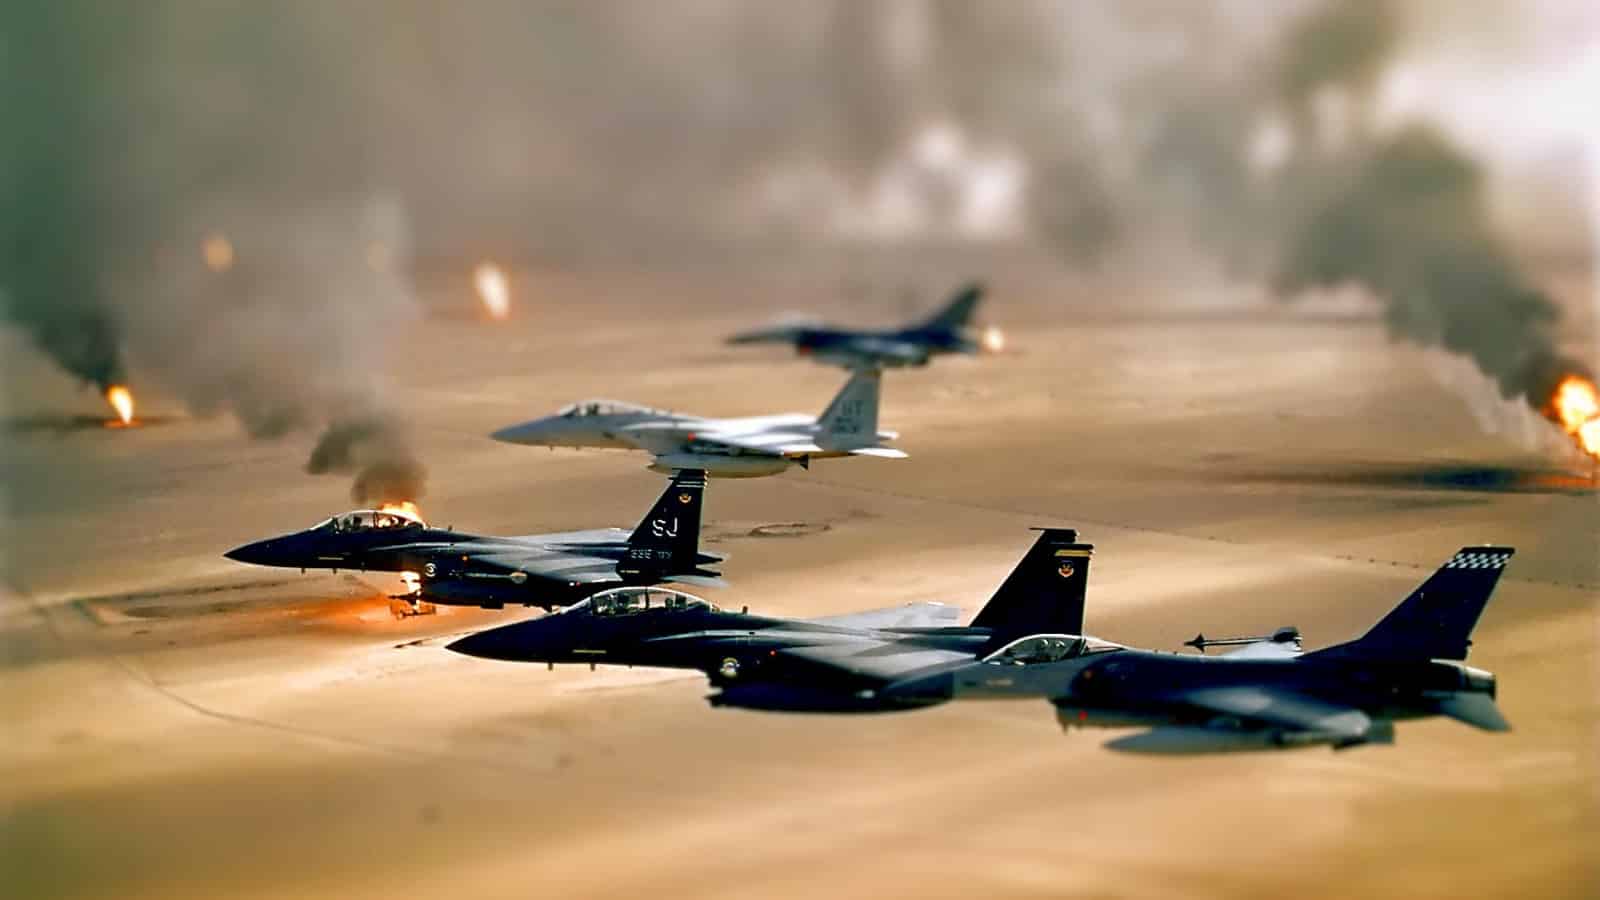 Guerra do Golfo - História, causas, países envolvidos e consequências